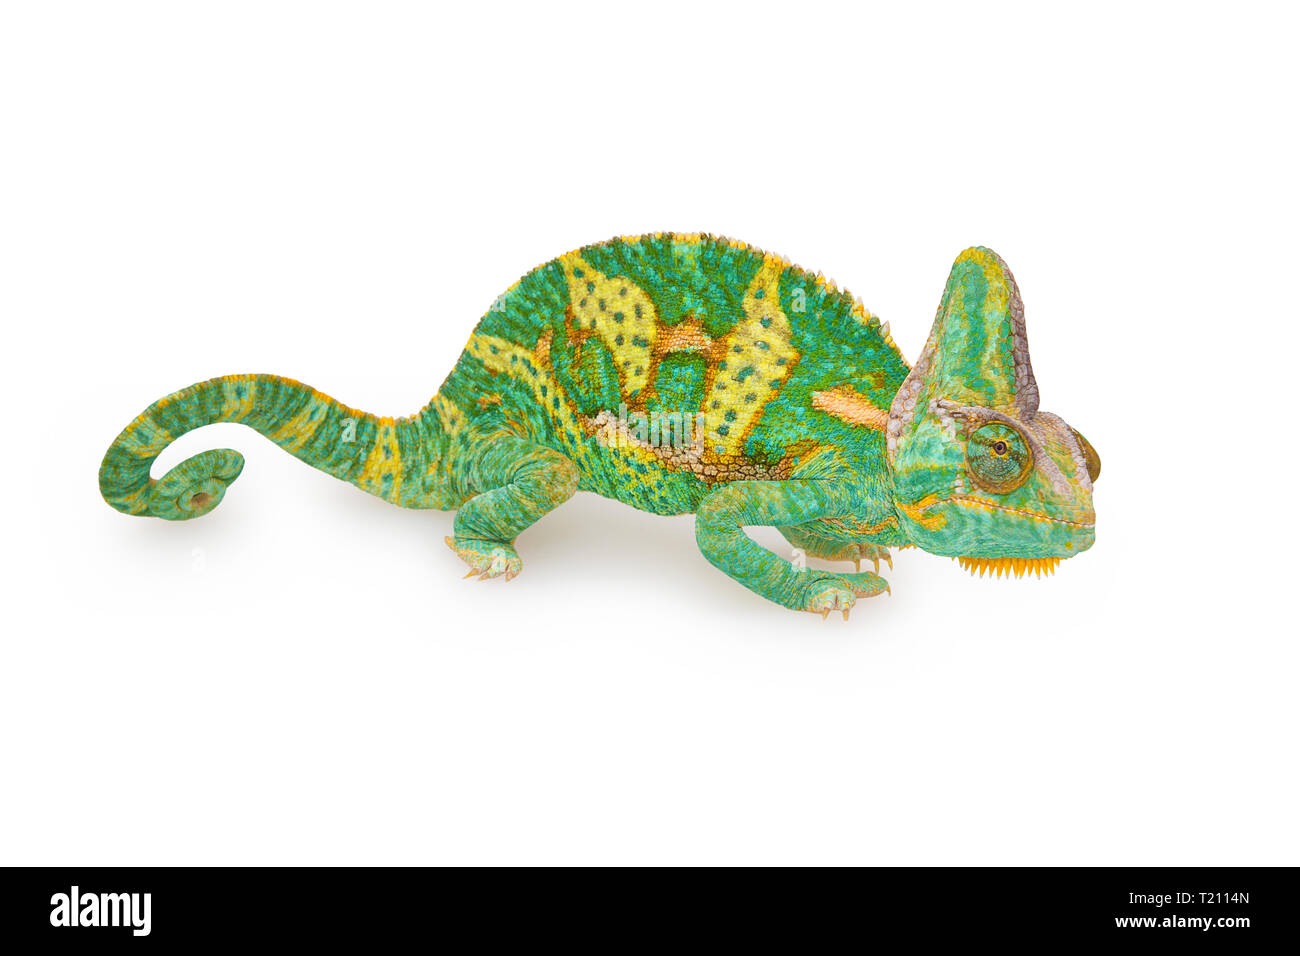 Fermer la vue d'une belle couleur verte chamaeleo calyptratus avec sa queue en spirale. Espèce également appelé à tête conique, voilée ou caméléon du Yémen. Banque D'Images